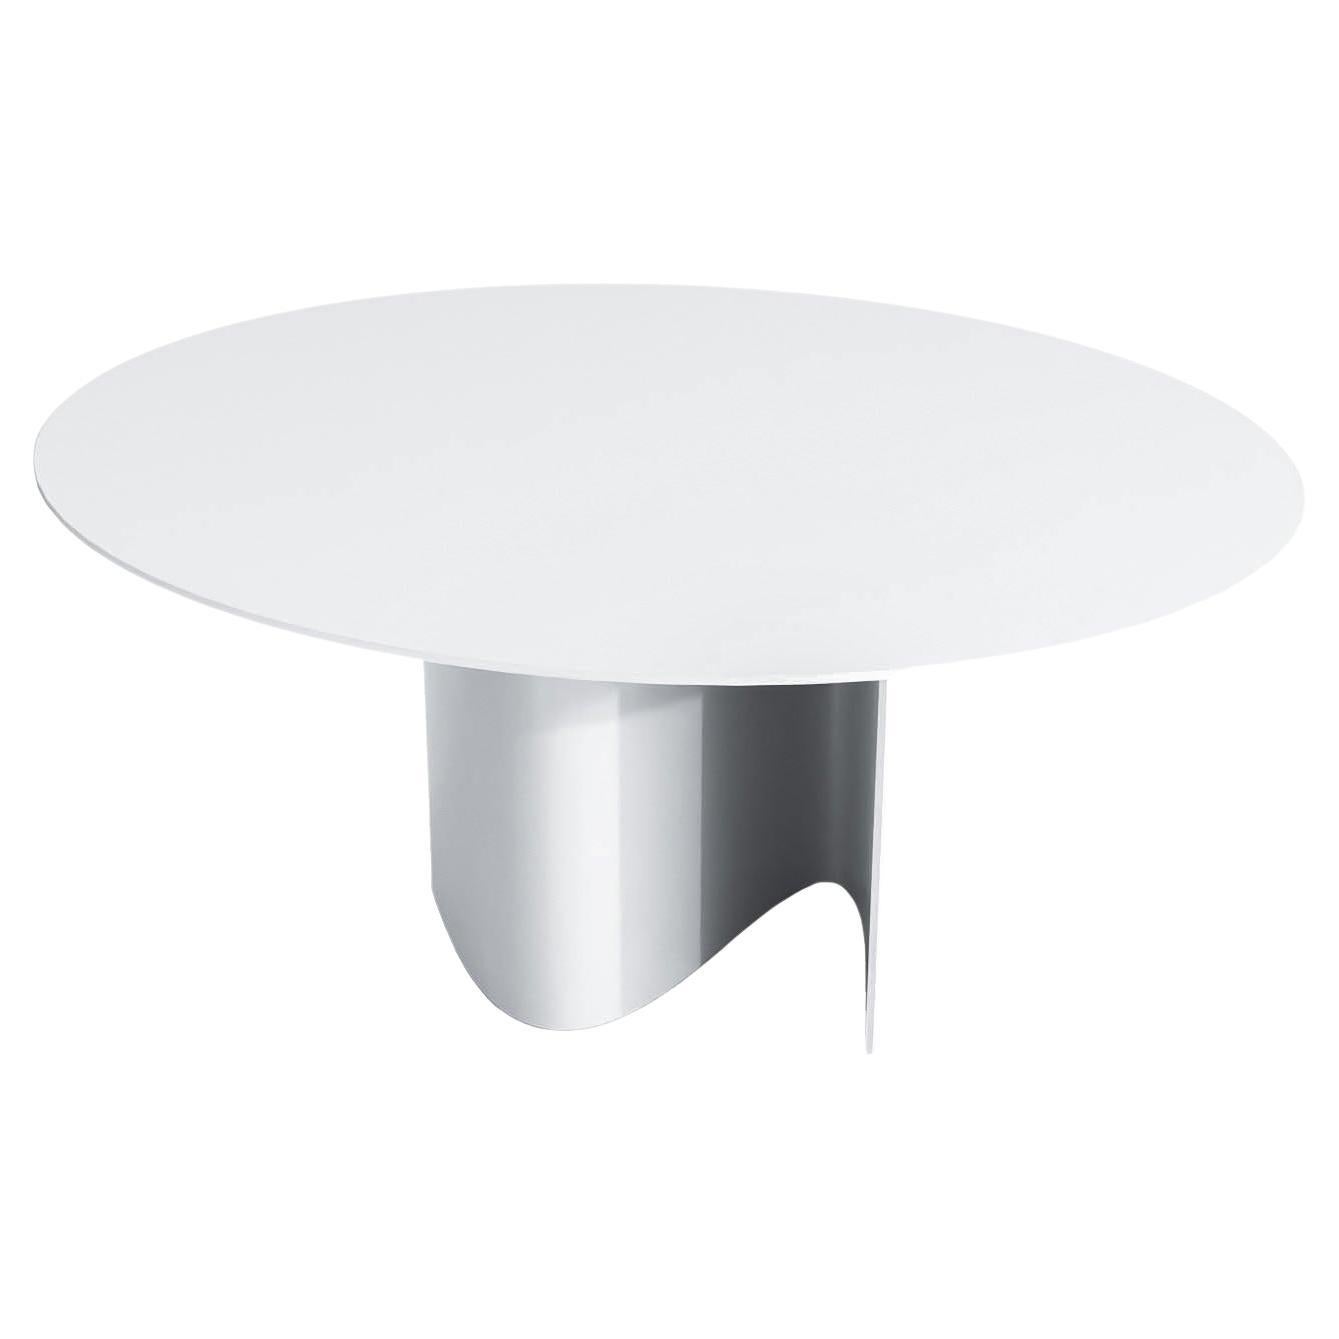 Table de salle à manger ronde contemporaine en acier poudré blanc, table en forme de vague